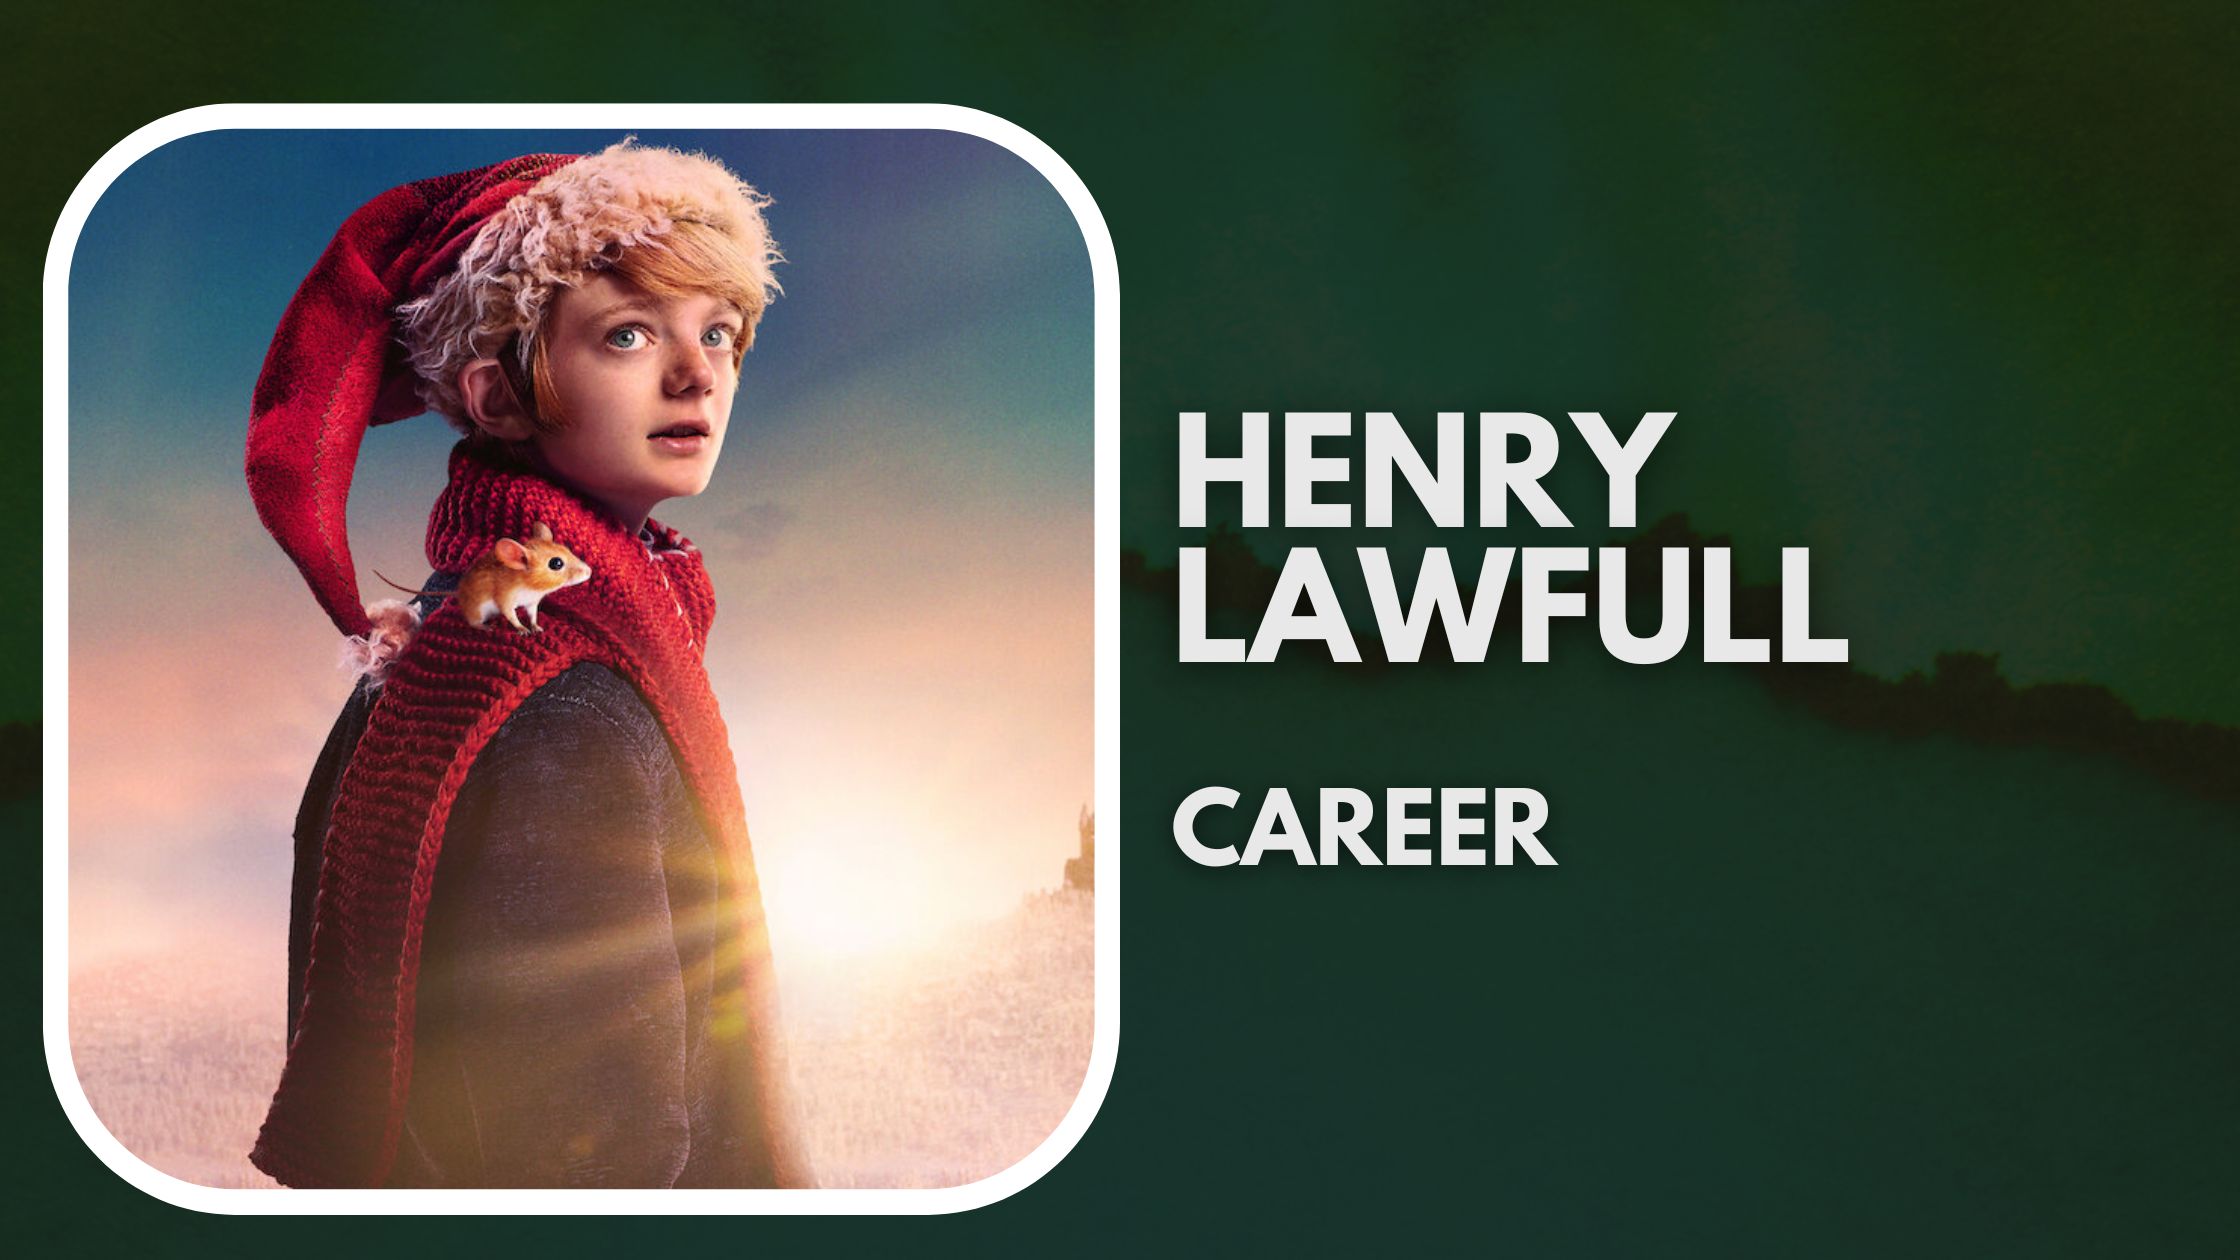 Henry Lawfull Career 